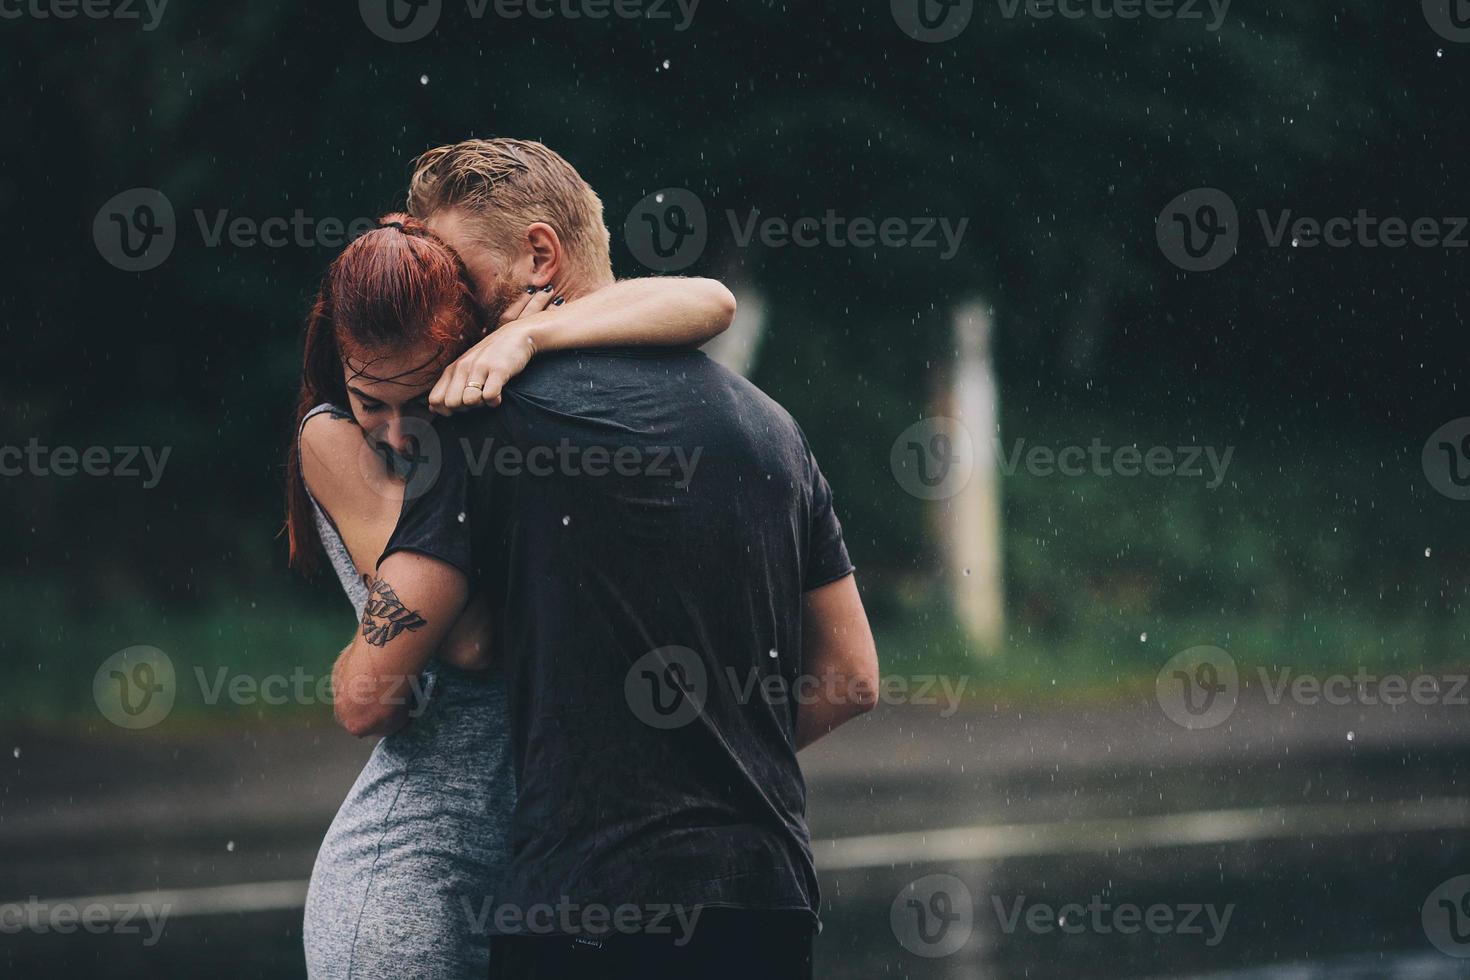 Schönes Paar, das sich im Regen umarmt foto